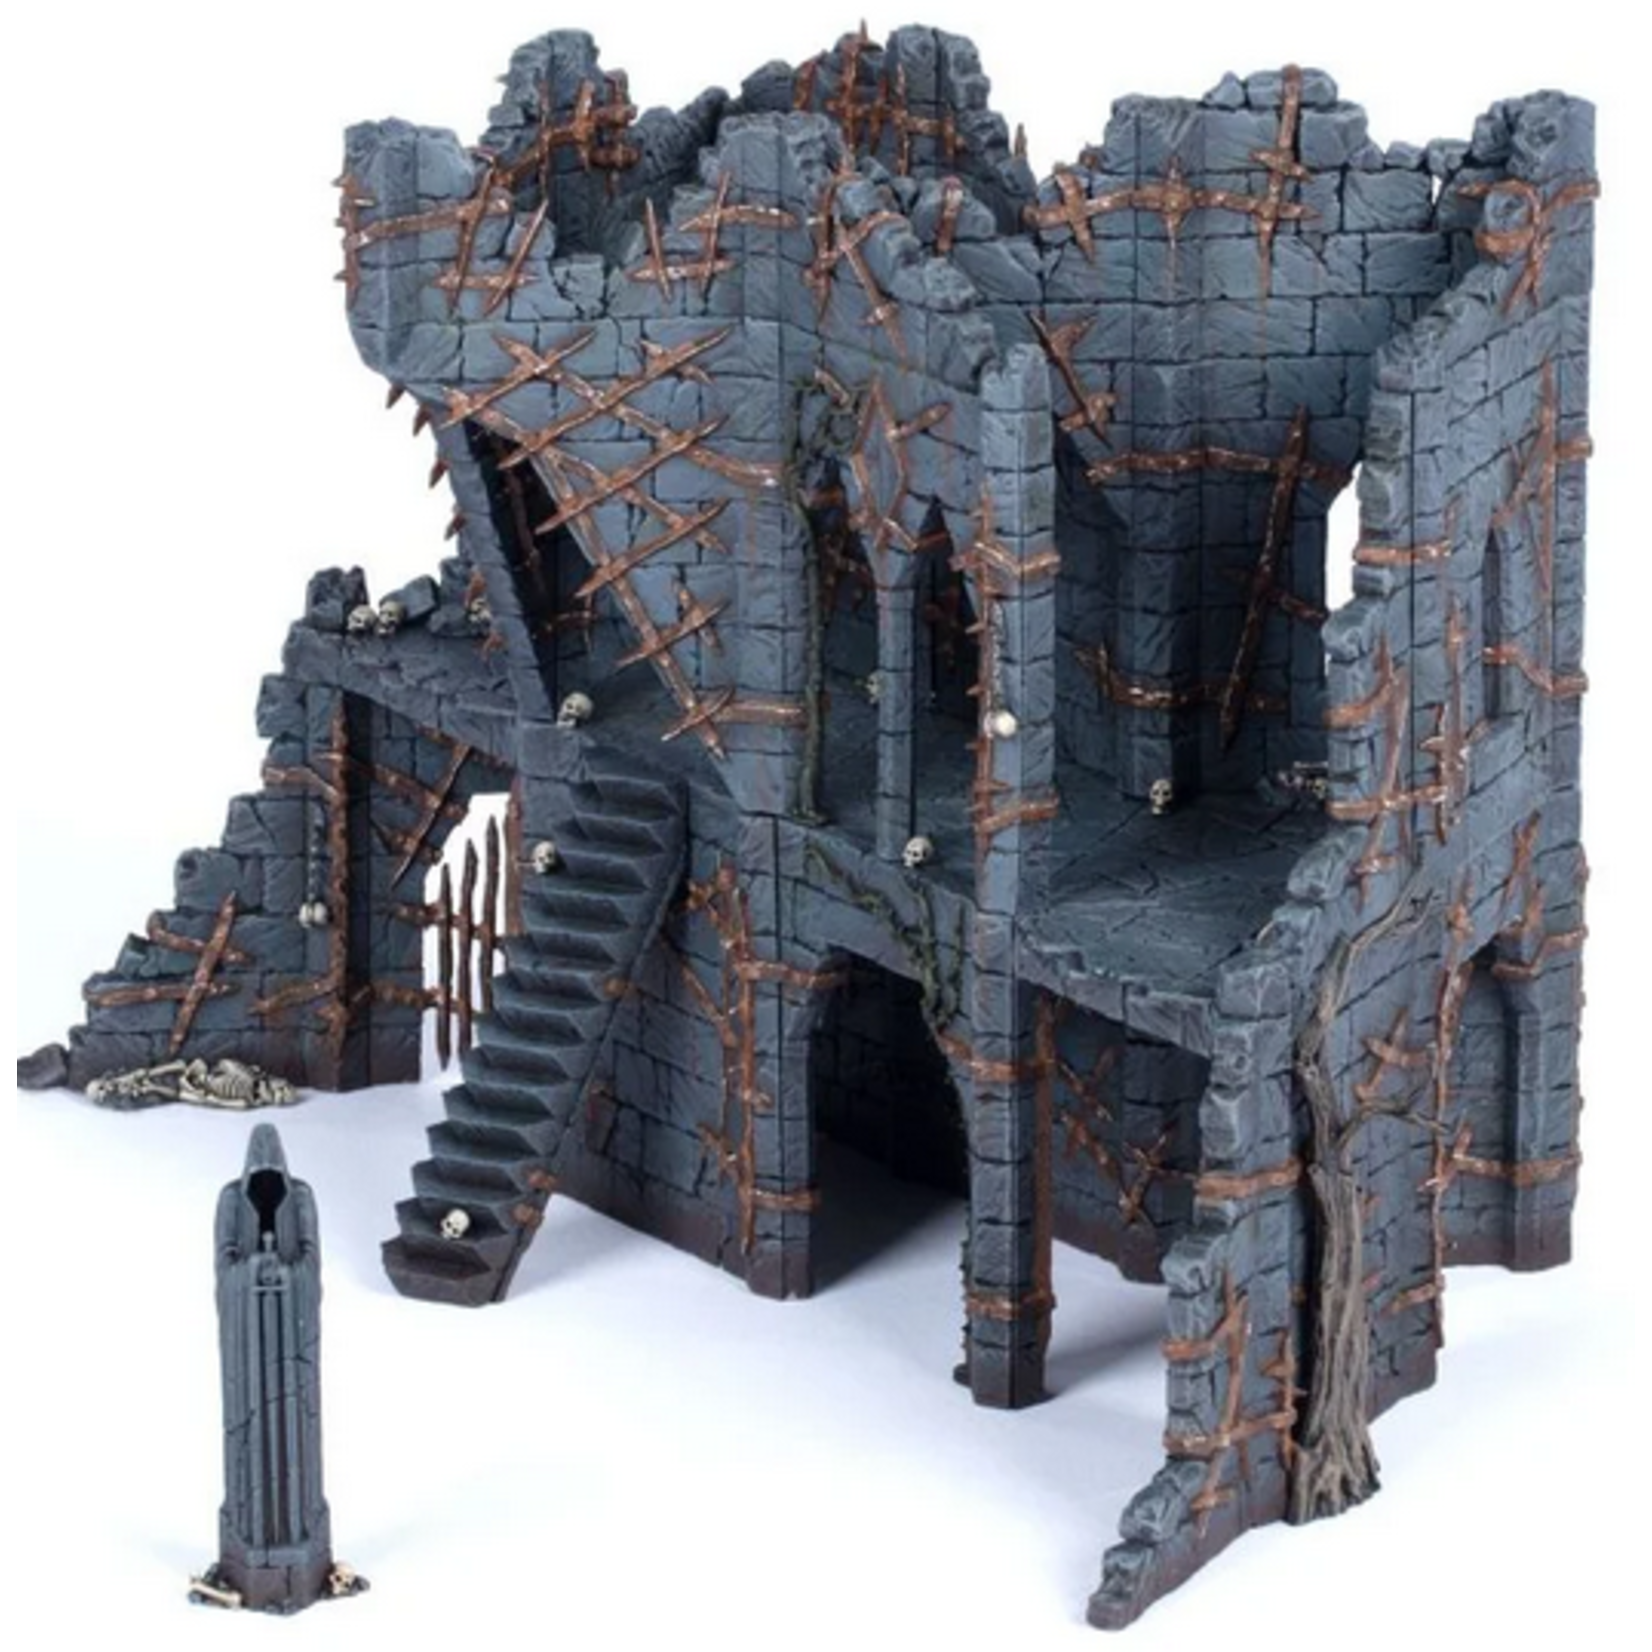 Middle-Earth: Ruins of Dol Guldur